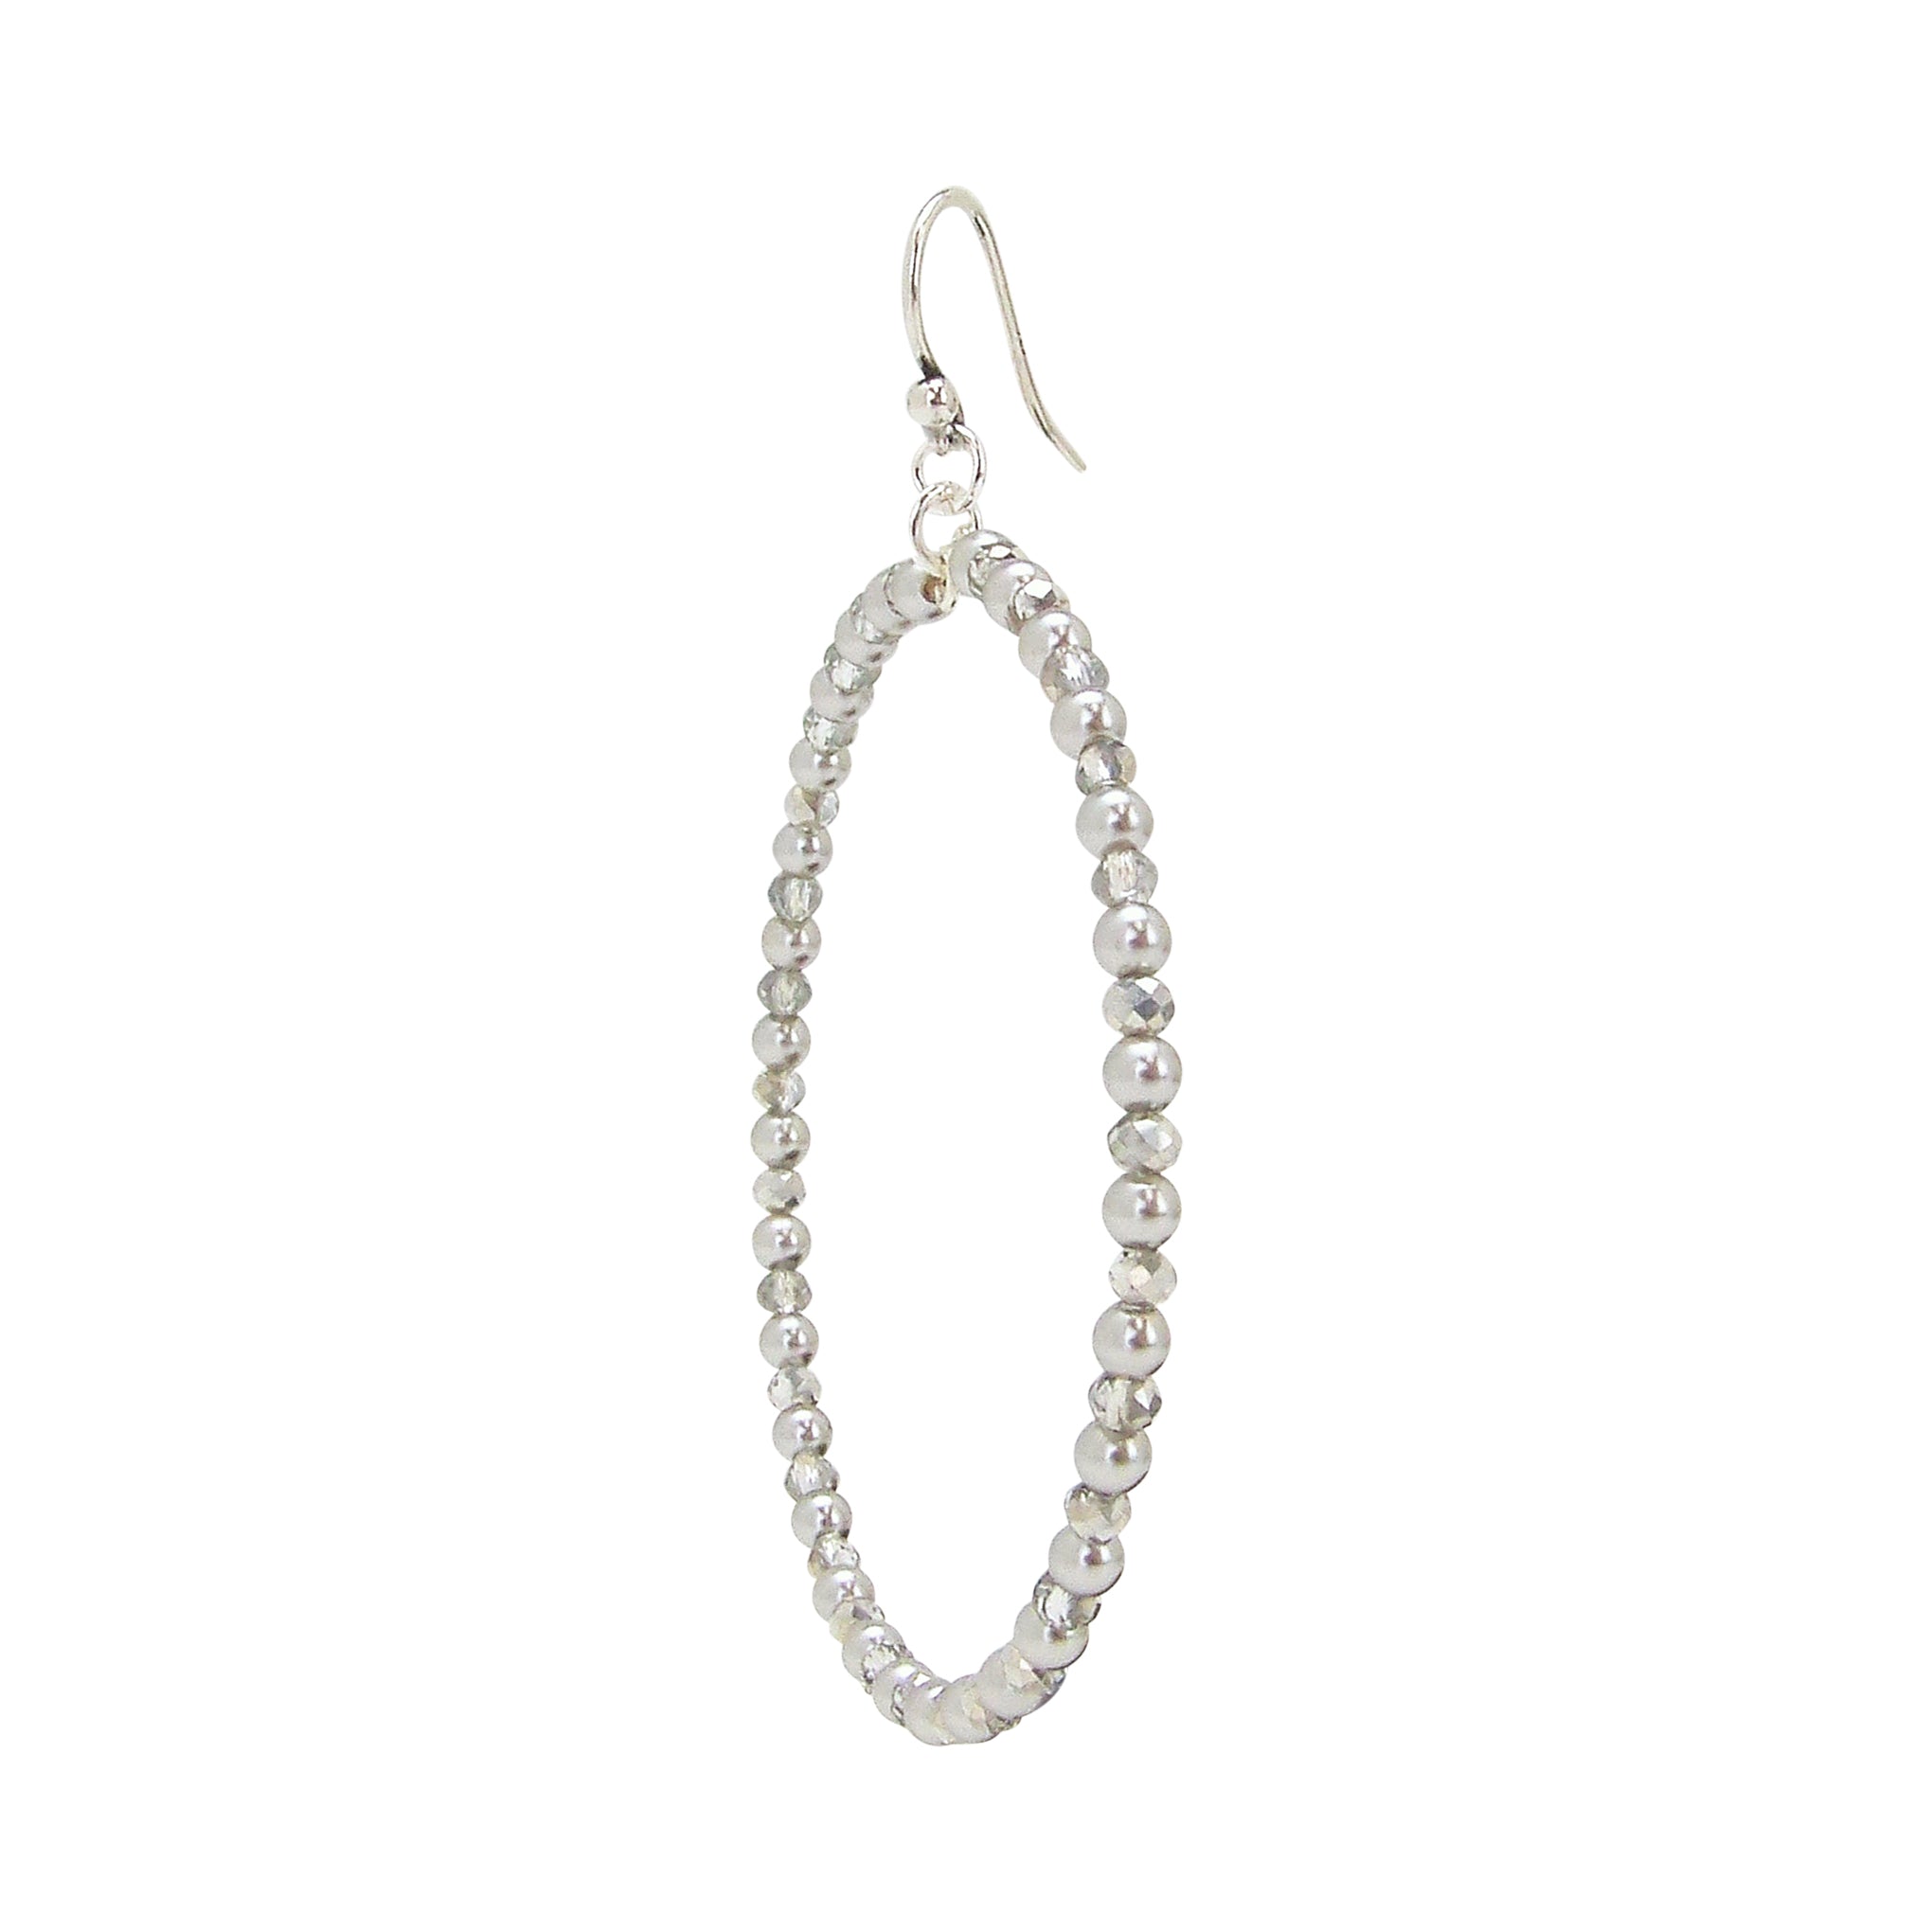 Chan Luu Silver Hoop Earrings in Grey Beads and Crystals